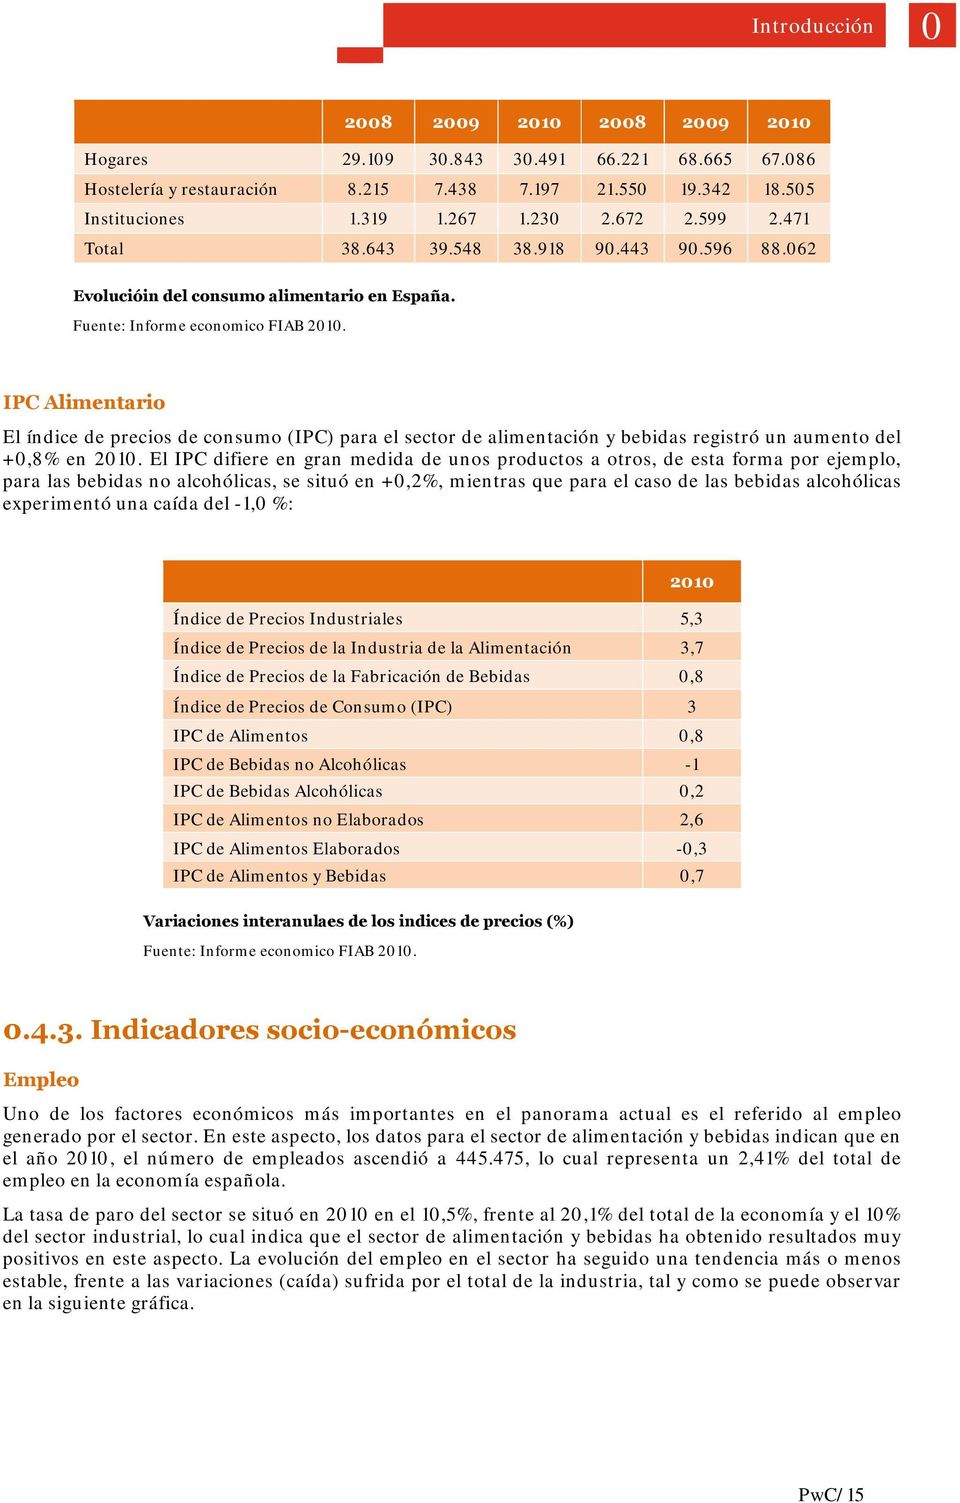 IPC Alimentario El índice de precios de consumo (IPC) para el sector de alimentación y bebidas registró un aumento del +0,8% en 2010.